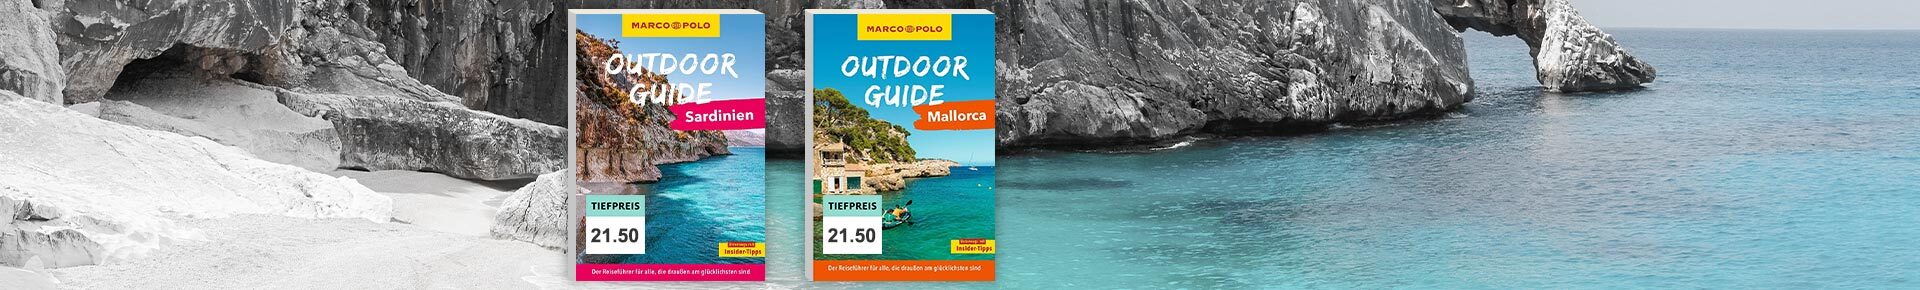 Marco Polo Outdoor Guide